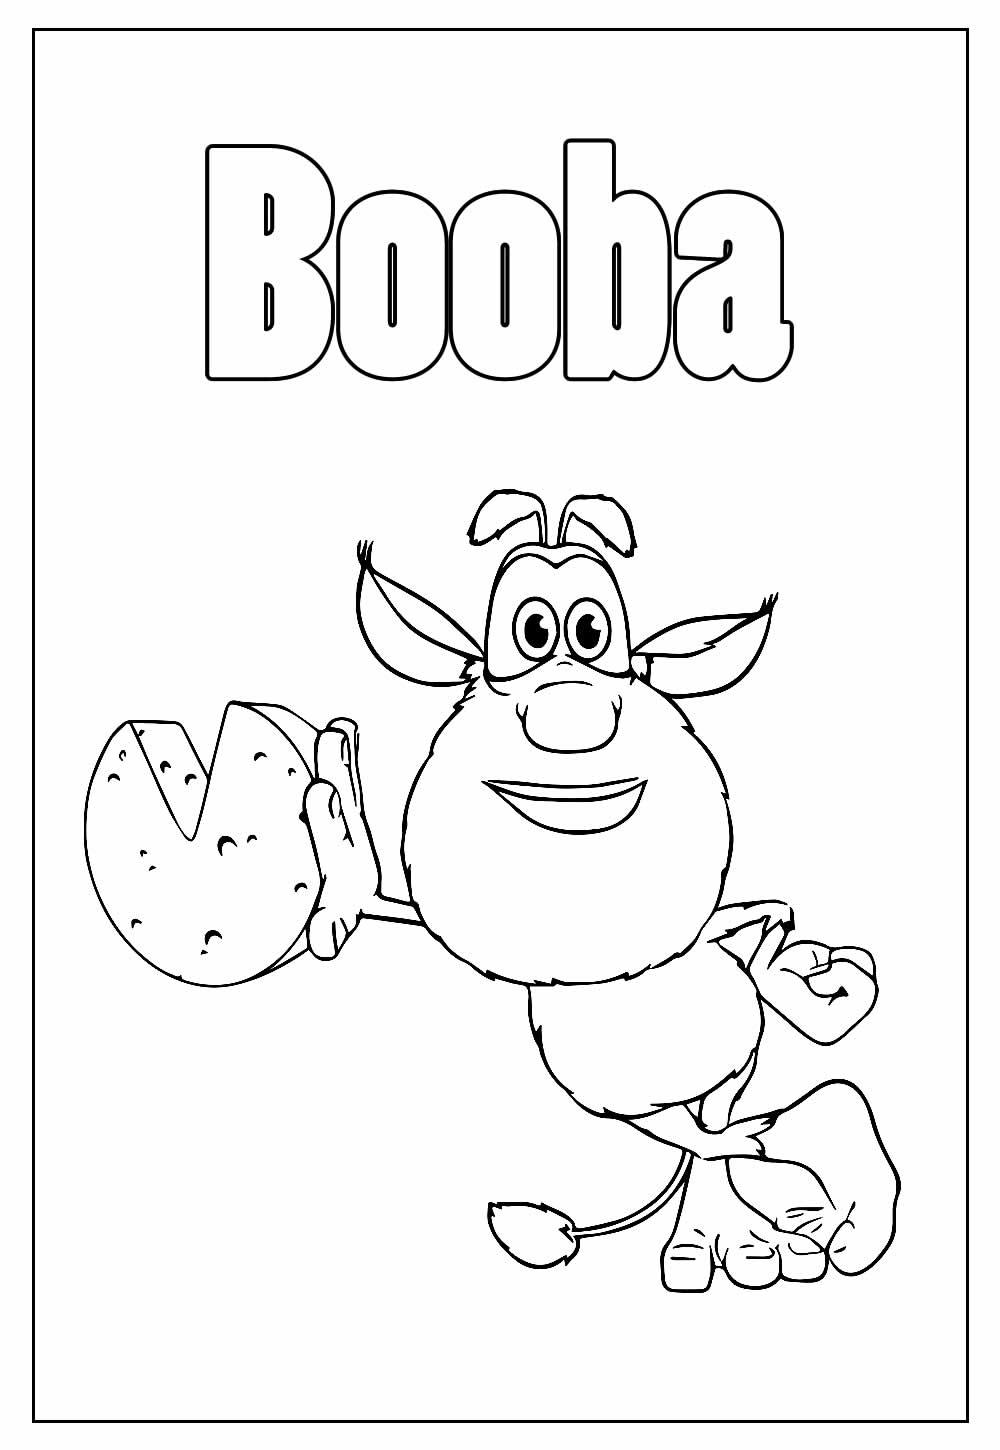 Desenho Educativo de Booba para colorir e pintar